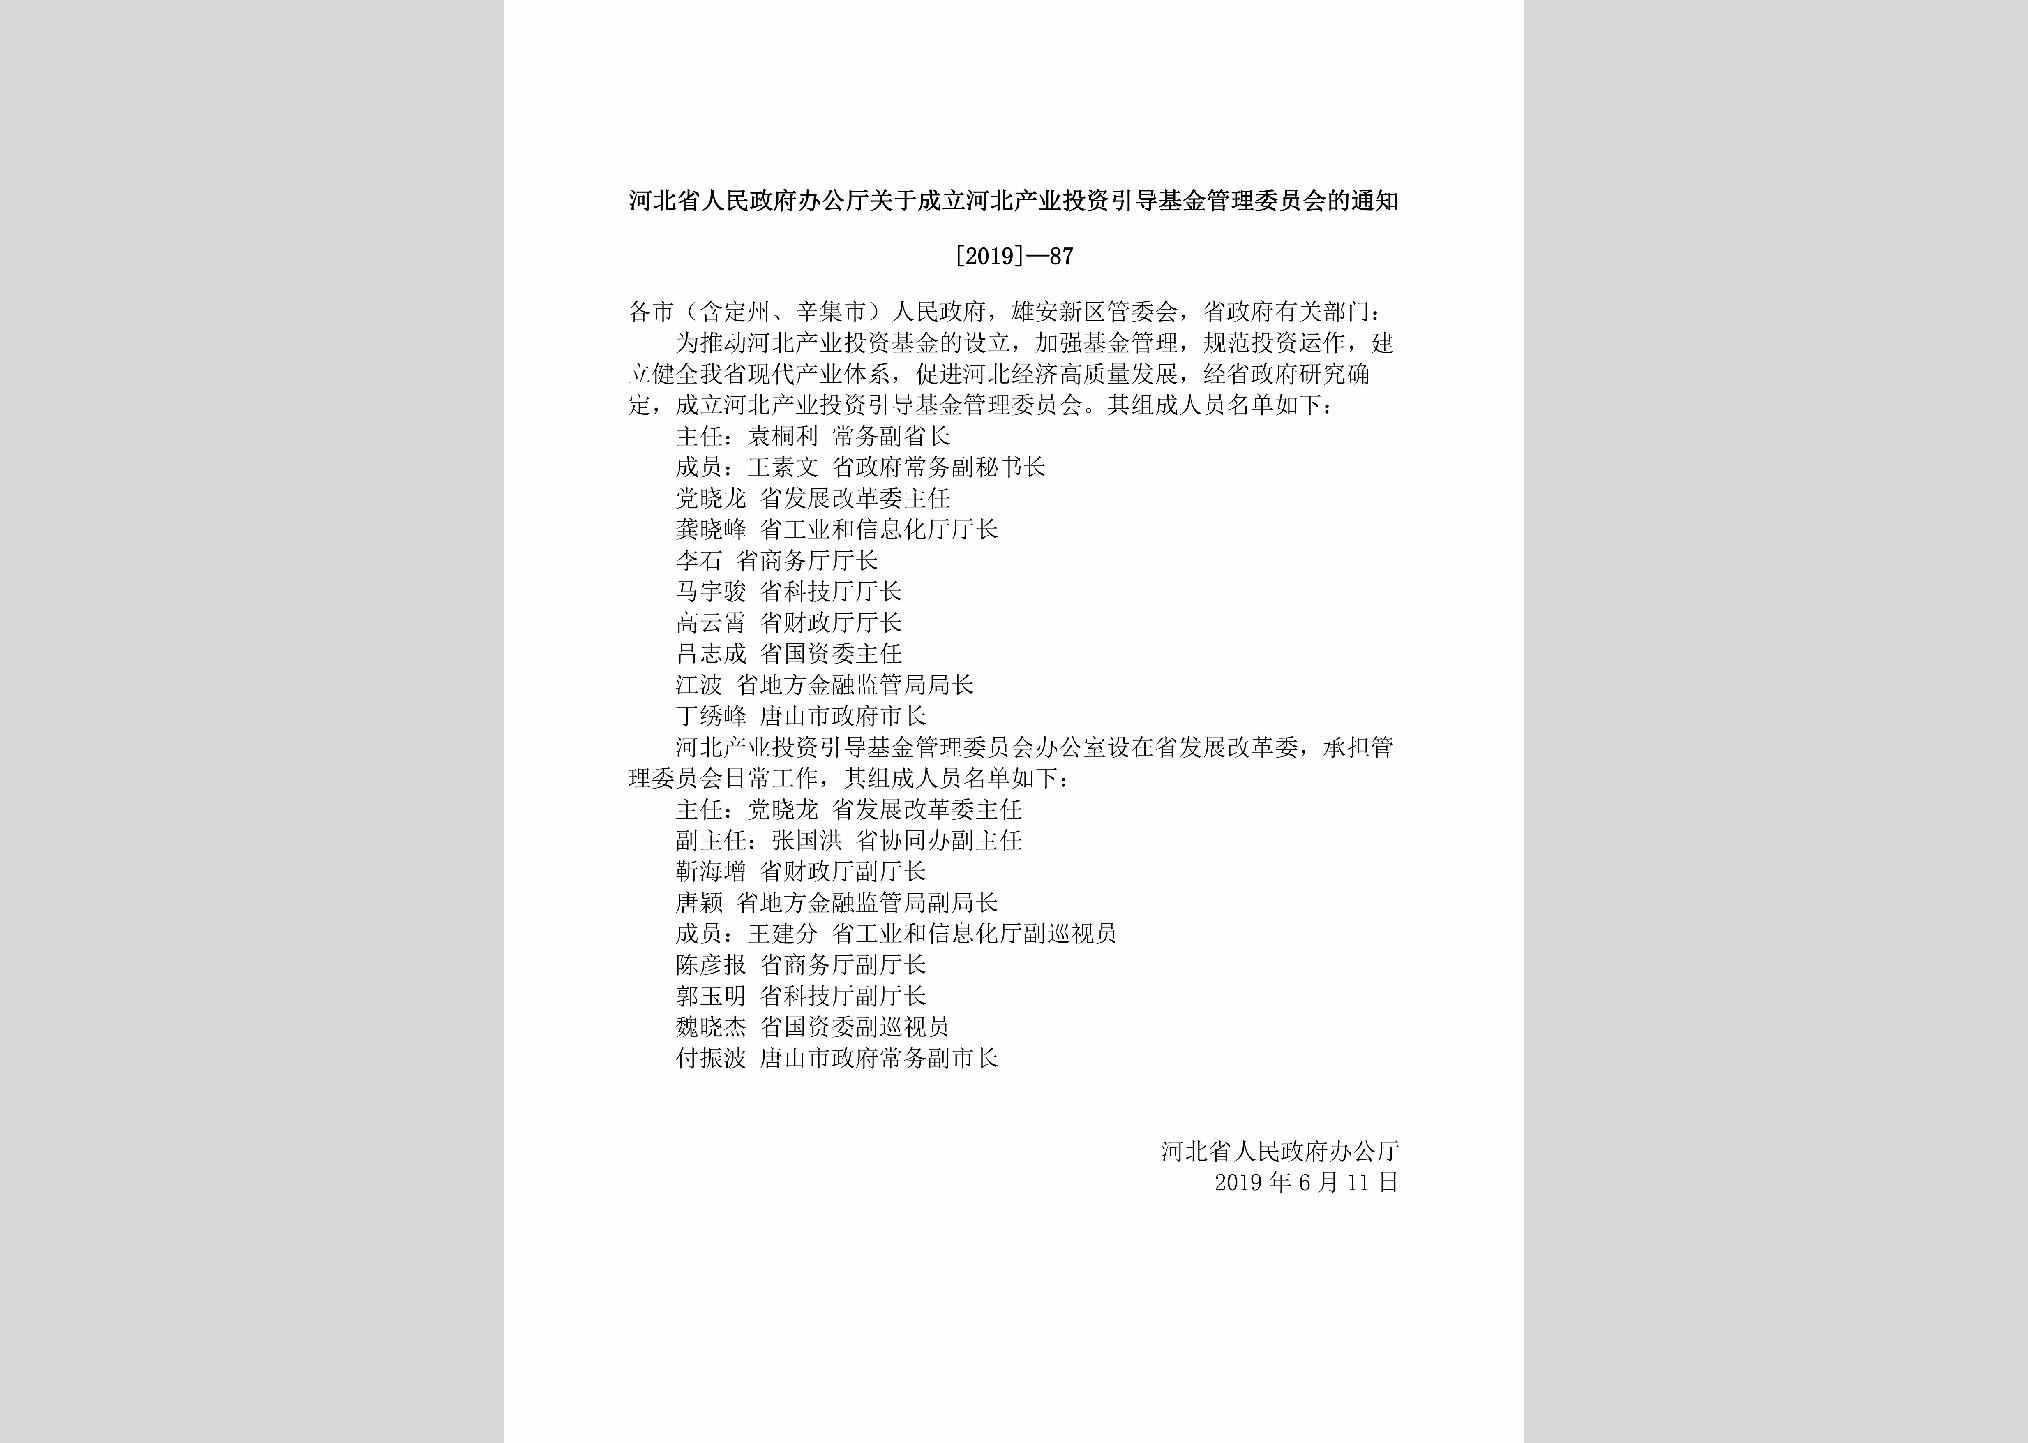 [2019]-87：河北省人民政府办公厅关于成立河北产业投资引导基金管理委员会的通知